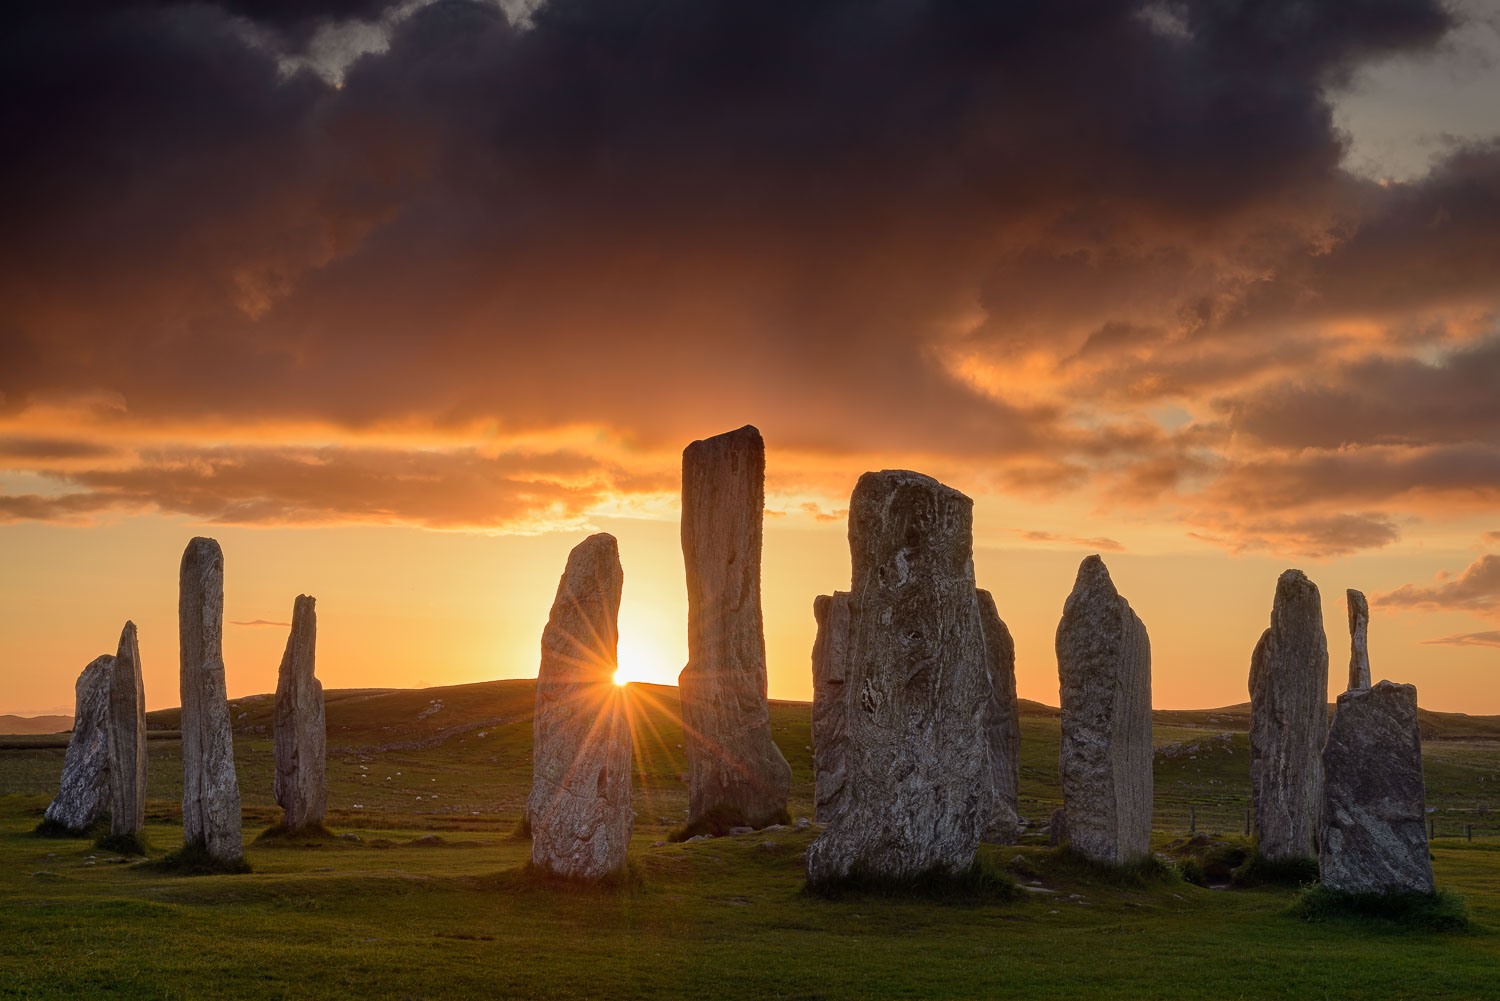 Standing stones. Калланиш Callanish Stones Шотландия. Менгиры Калланиша, Шотландия. Стоячие камни Калланиша, Шотландия. Камни Калланиш остров Льюис Шотландия.